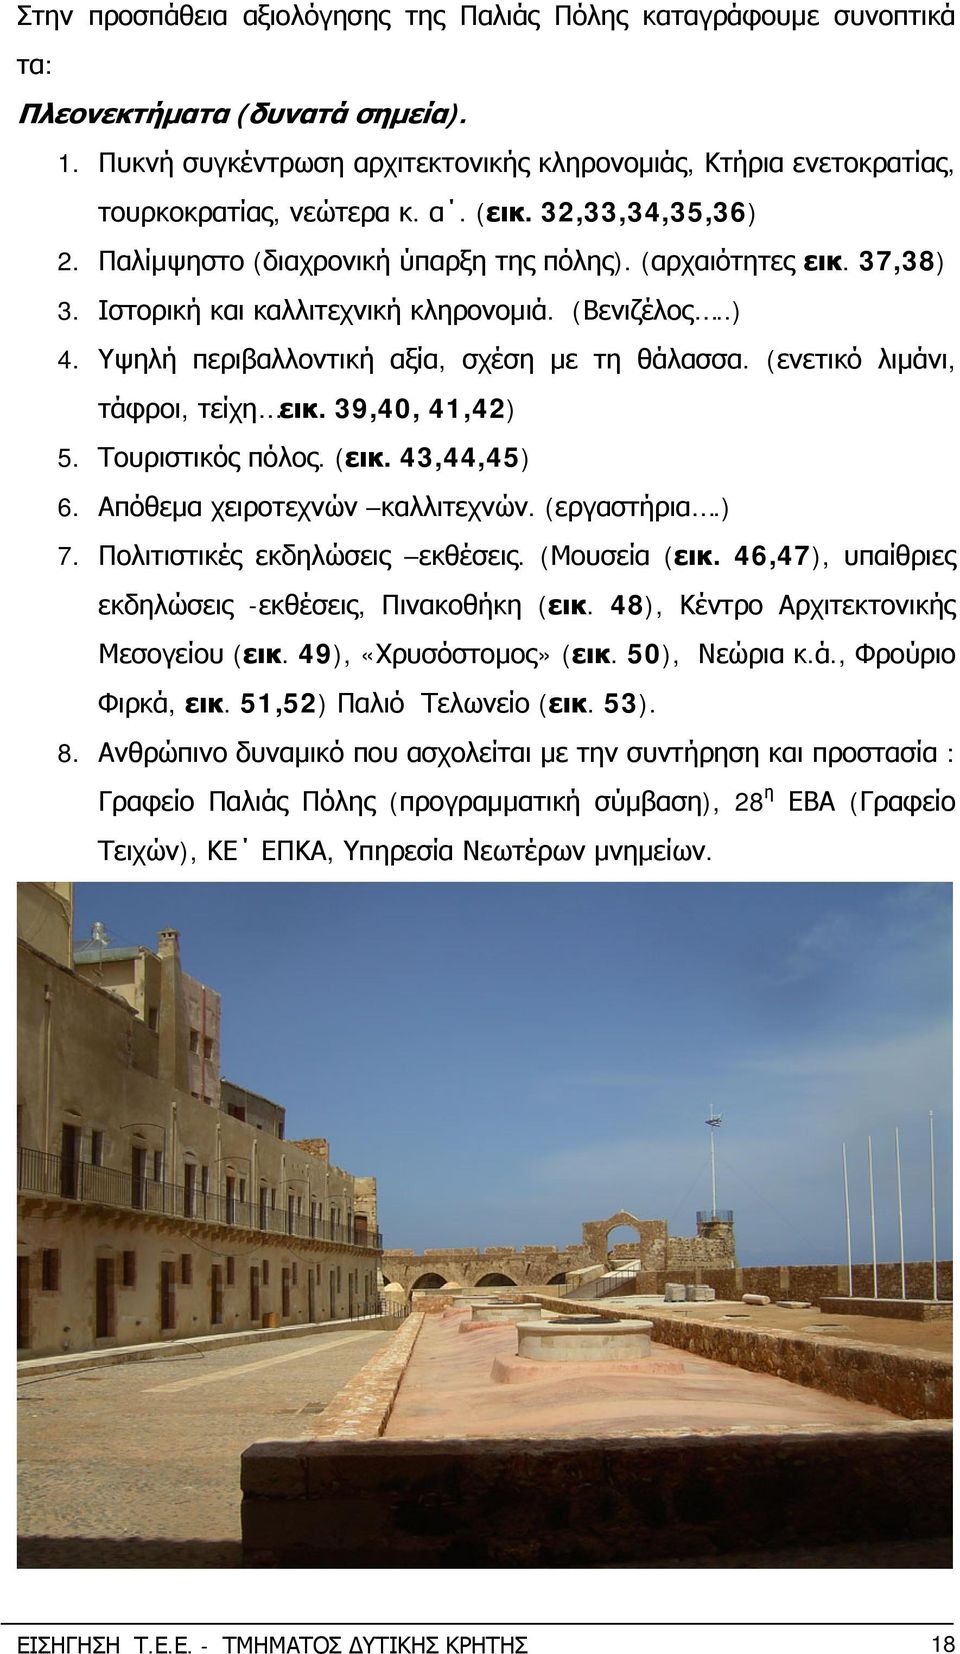 (ενετικό λιμάνι, τάφροι, τείχη εικ. 39,40, 41,42) 5. Τουριστικός πόλος. (εικ. 43,44,45) 6. Απόθεμα χειροτεχνών καλλιτεχνών. (εργαστήρια.) 7. Πολιτιστικές εκδηλώσεις εκθέσεις. (Μουσεία (εικ.